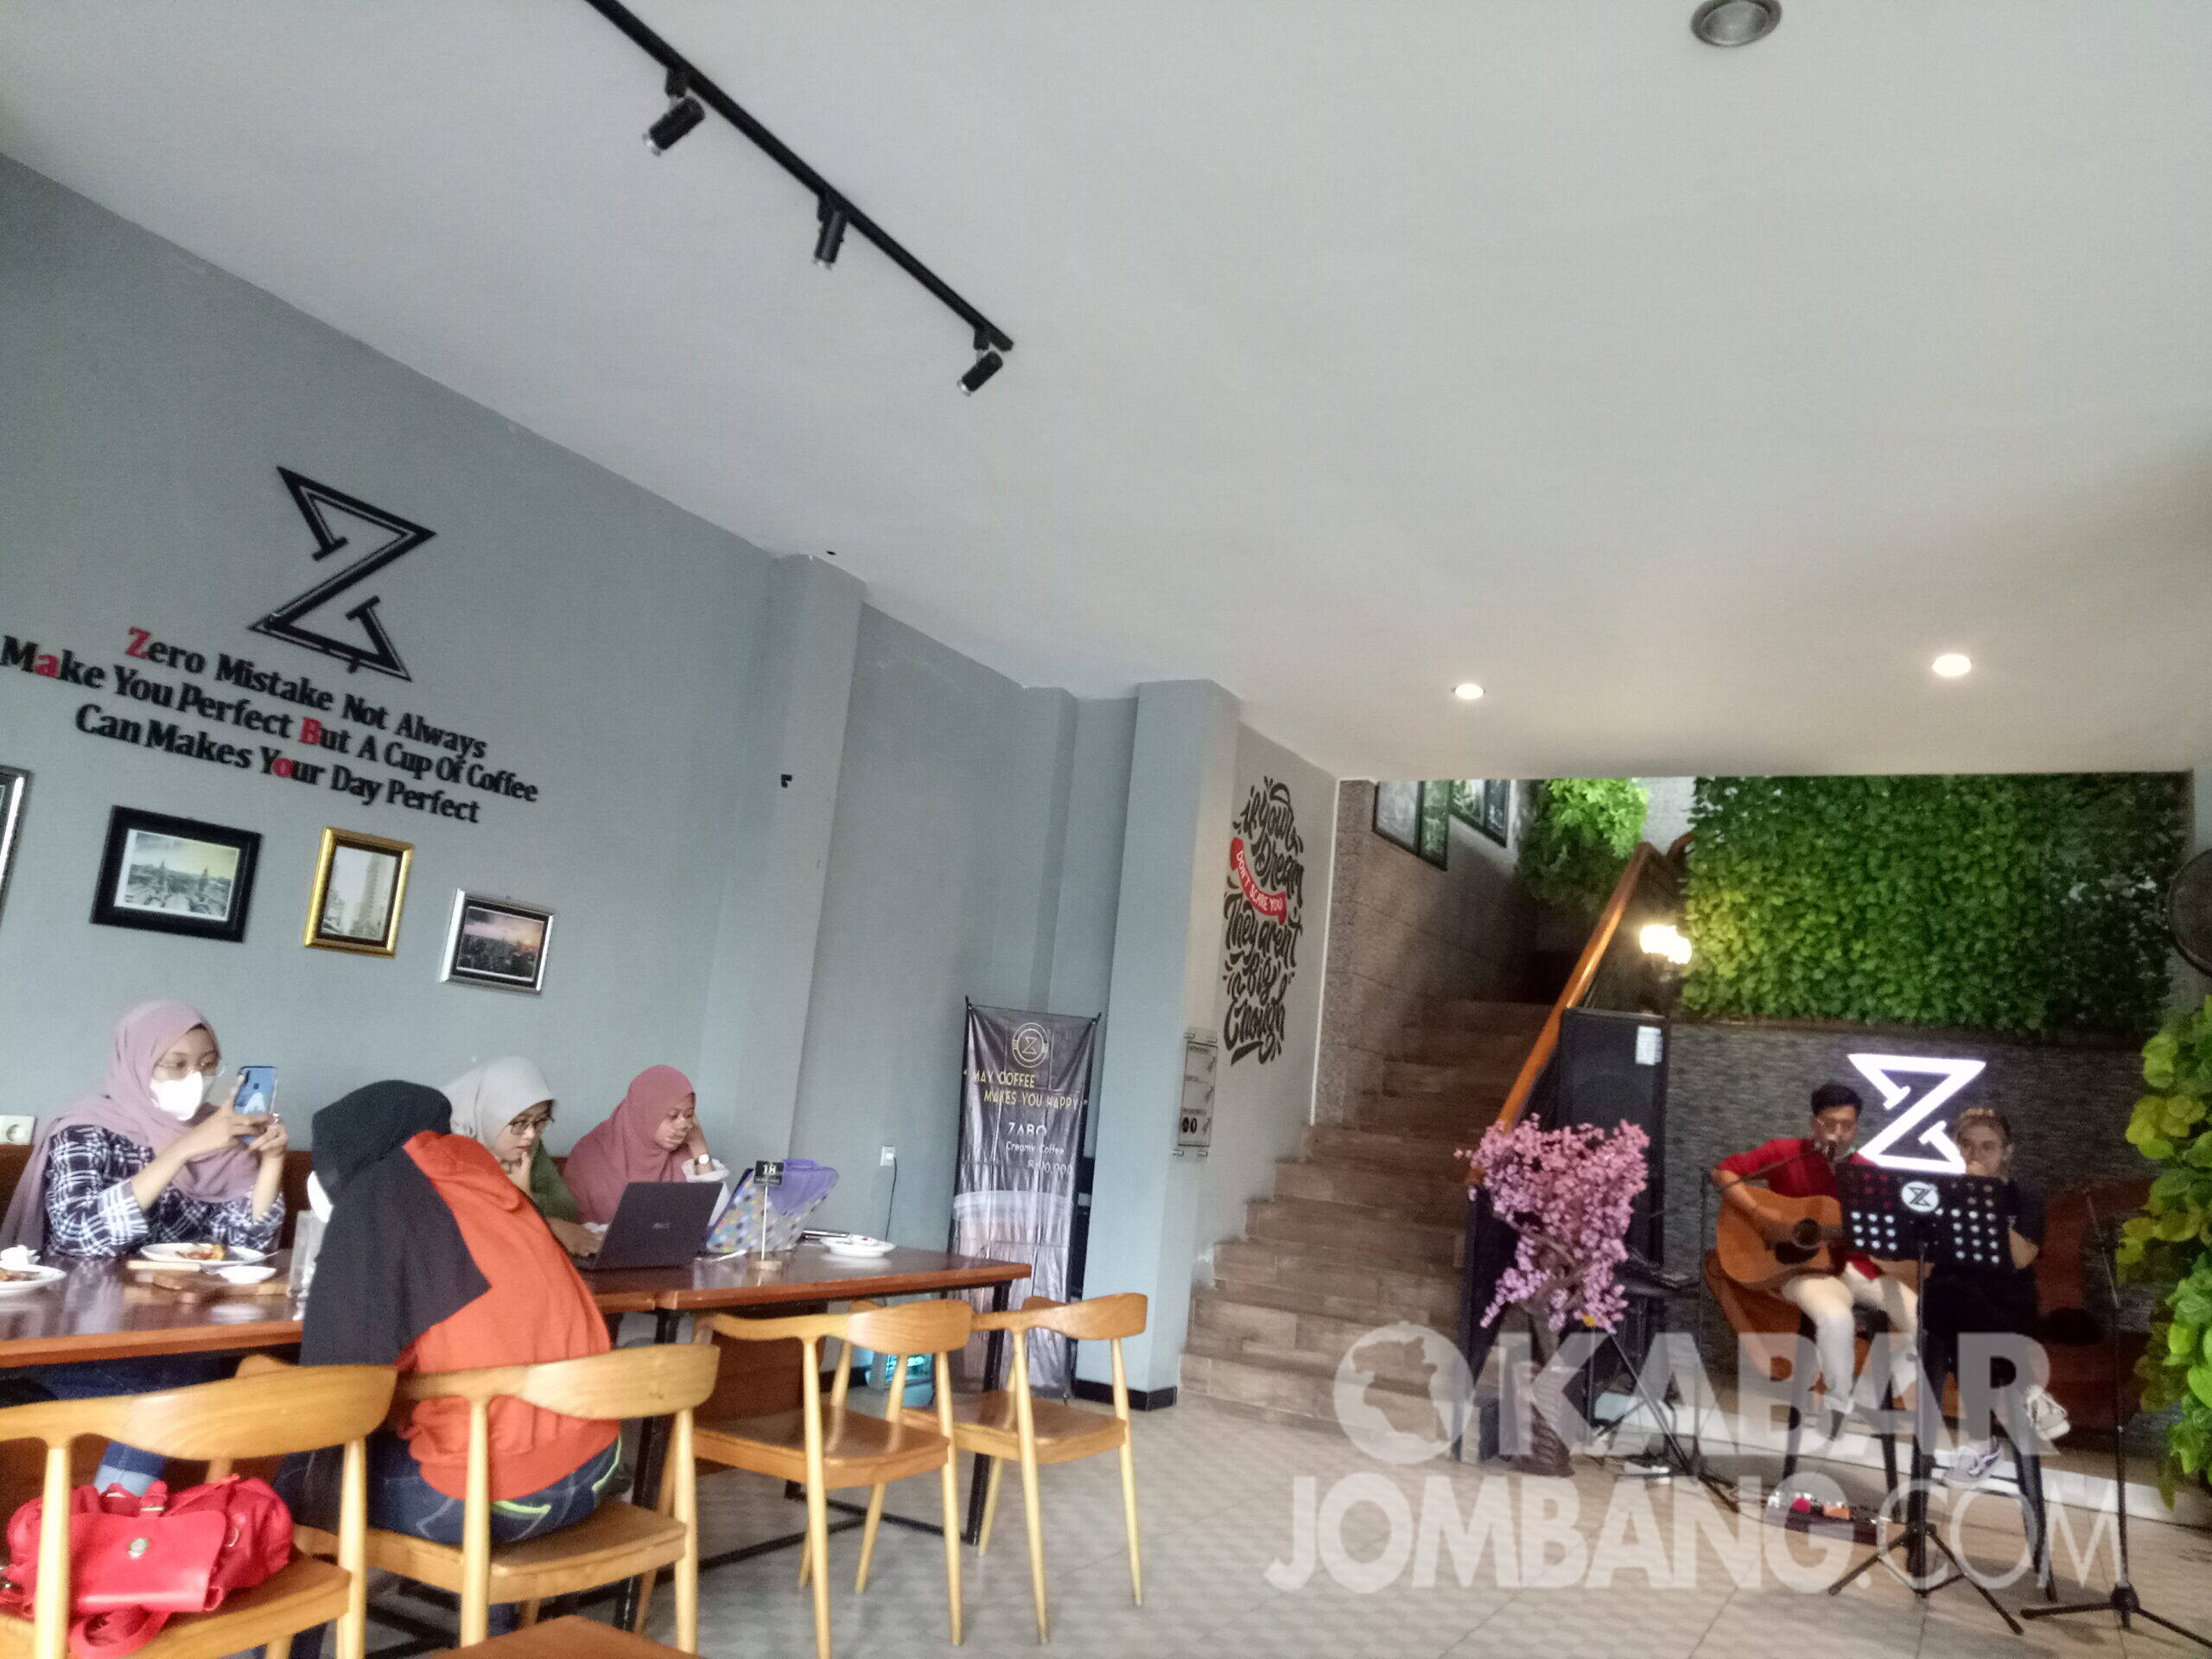 Beberapa pengunjung saat berakhir pekan dengan suguhan live musik di Zabo kafe.